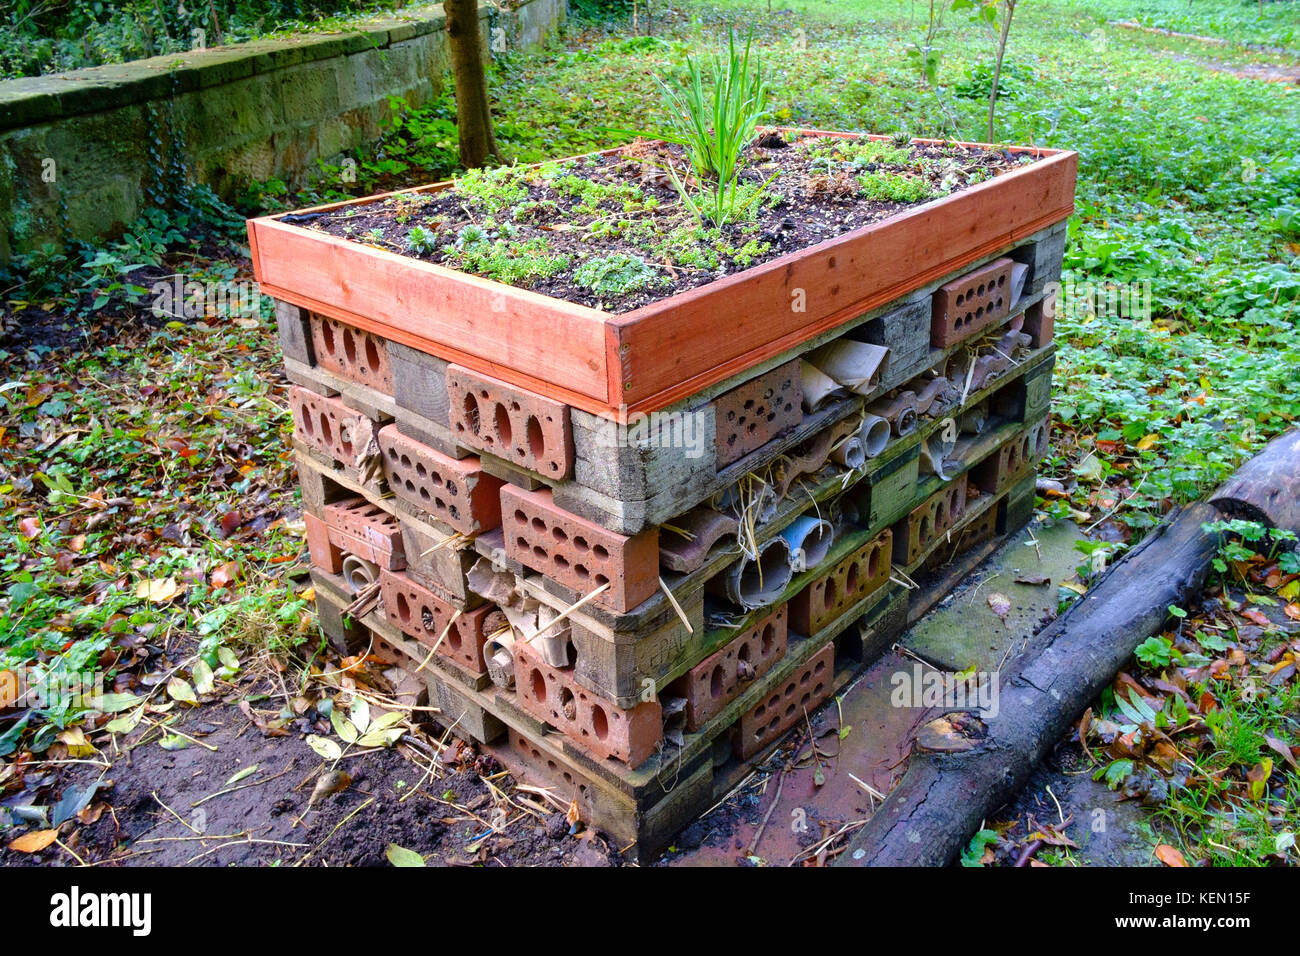 Un bug maison construite de briques et tuiles de bois pour fournir de l'hibernation de l'élevage pour la conservation et l'étude des insectes Banque D'Images